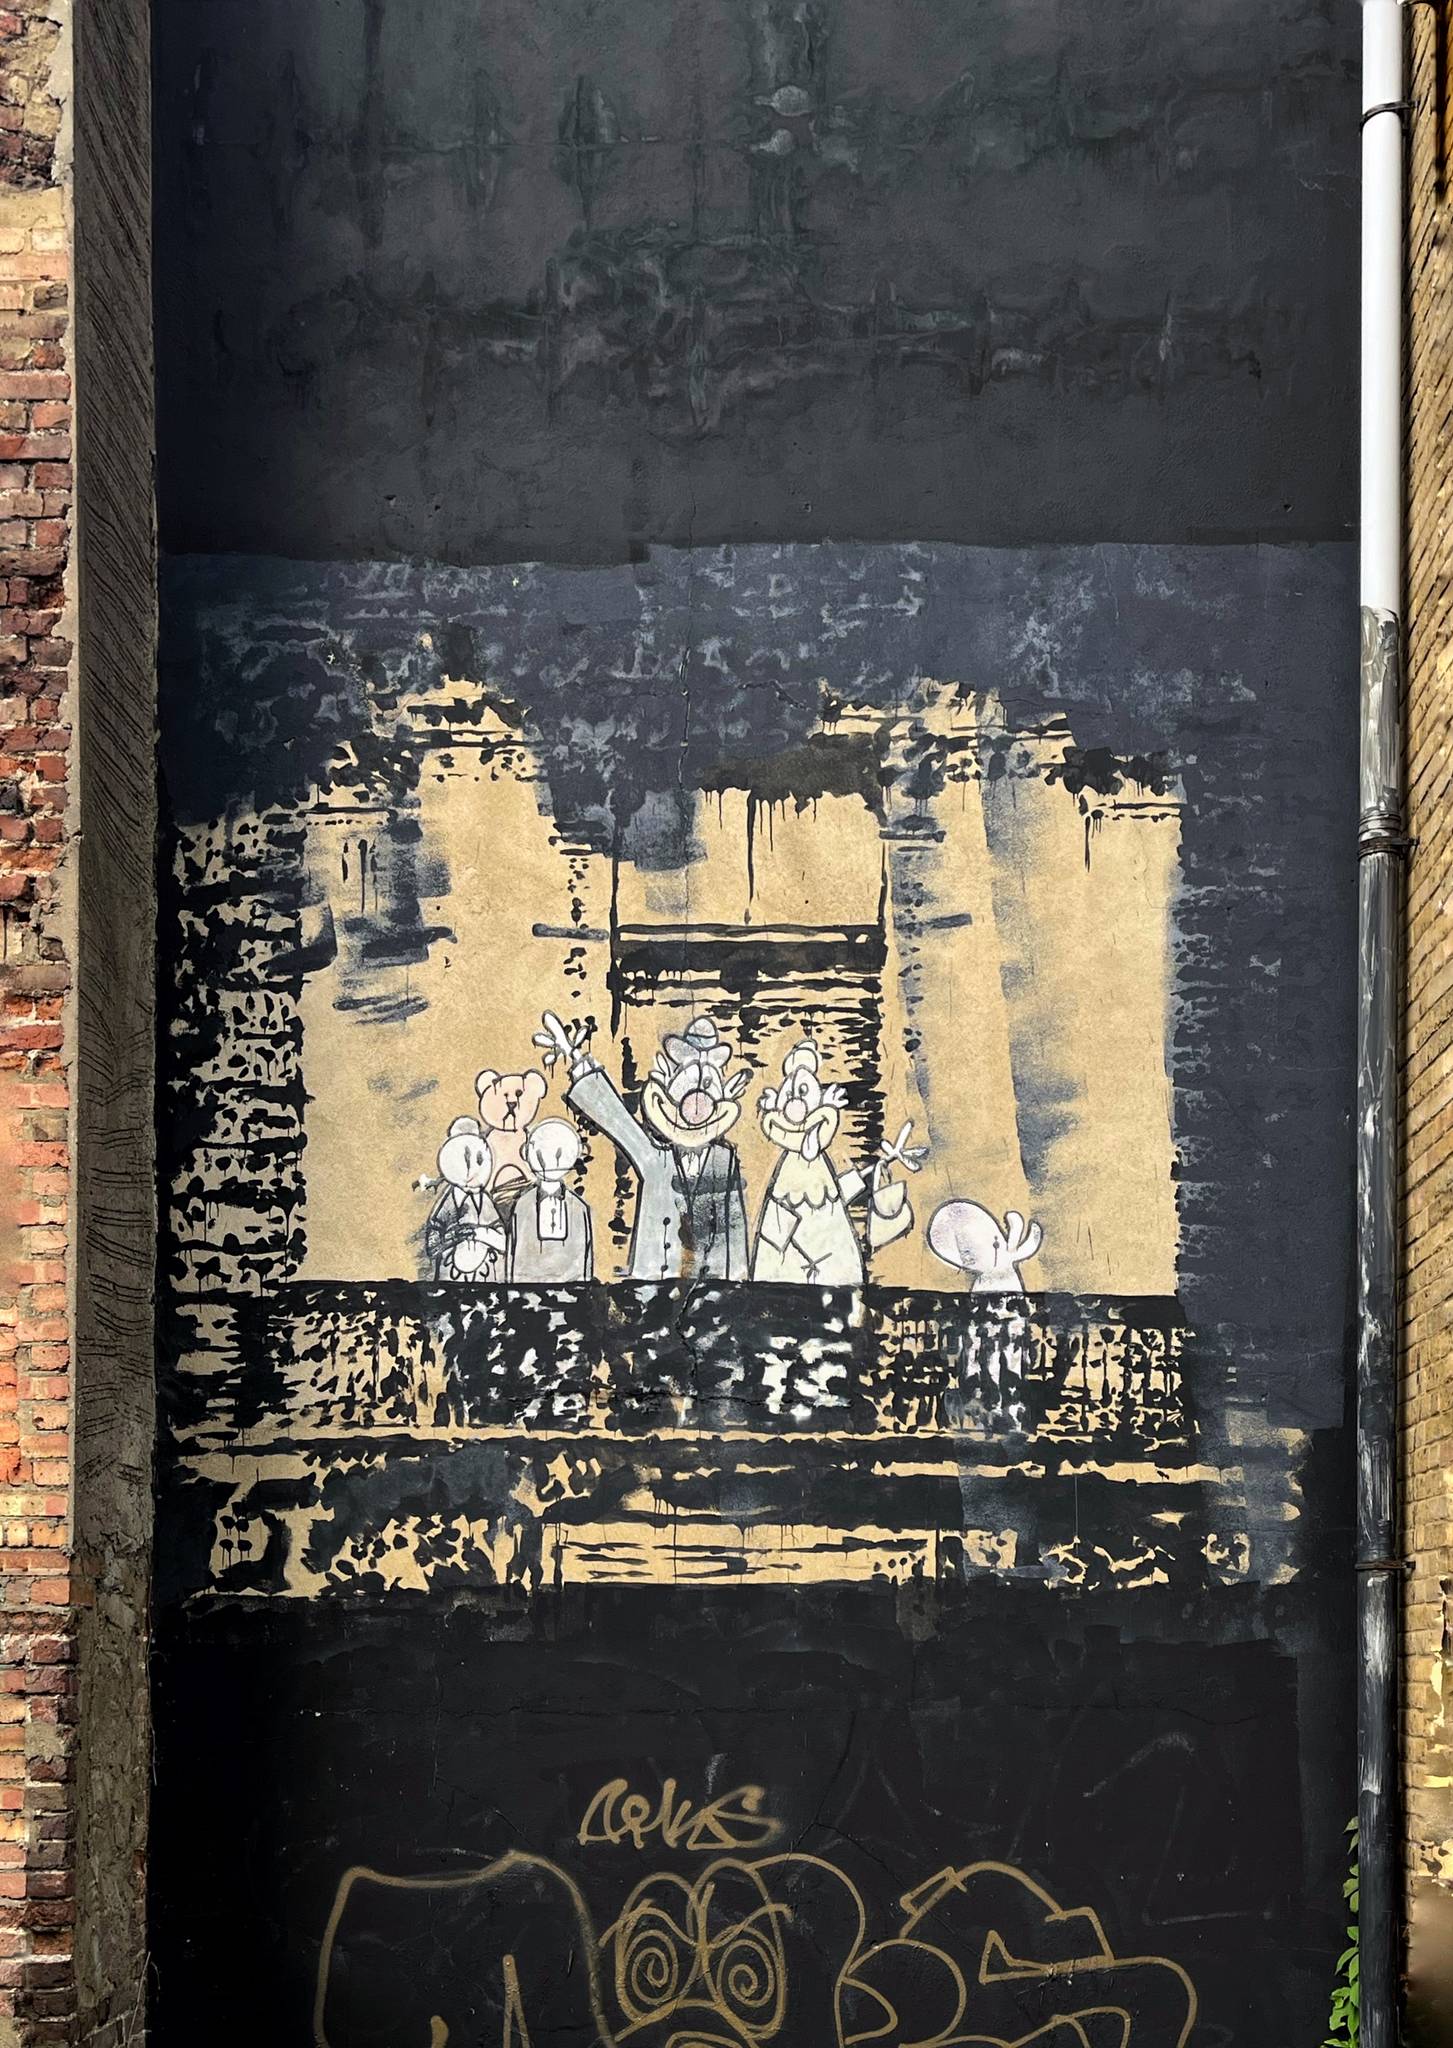 Banksy&mdash;Balcony family / Royal family